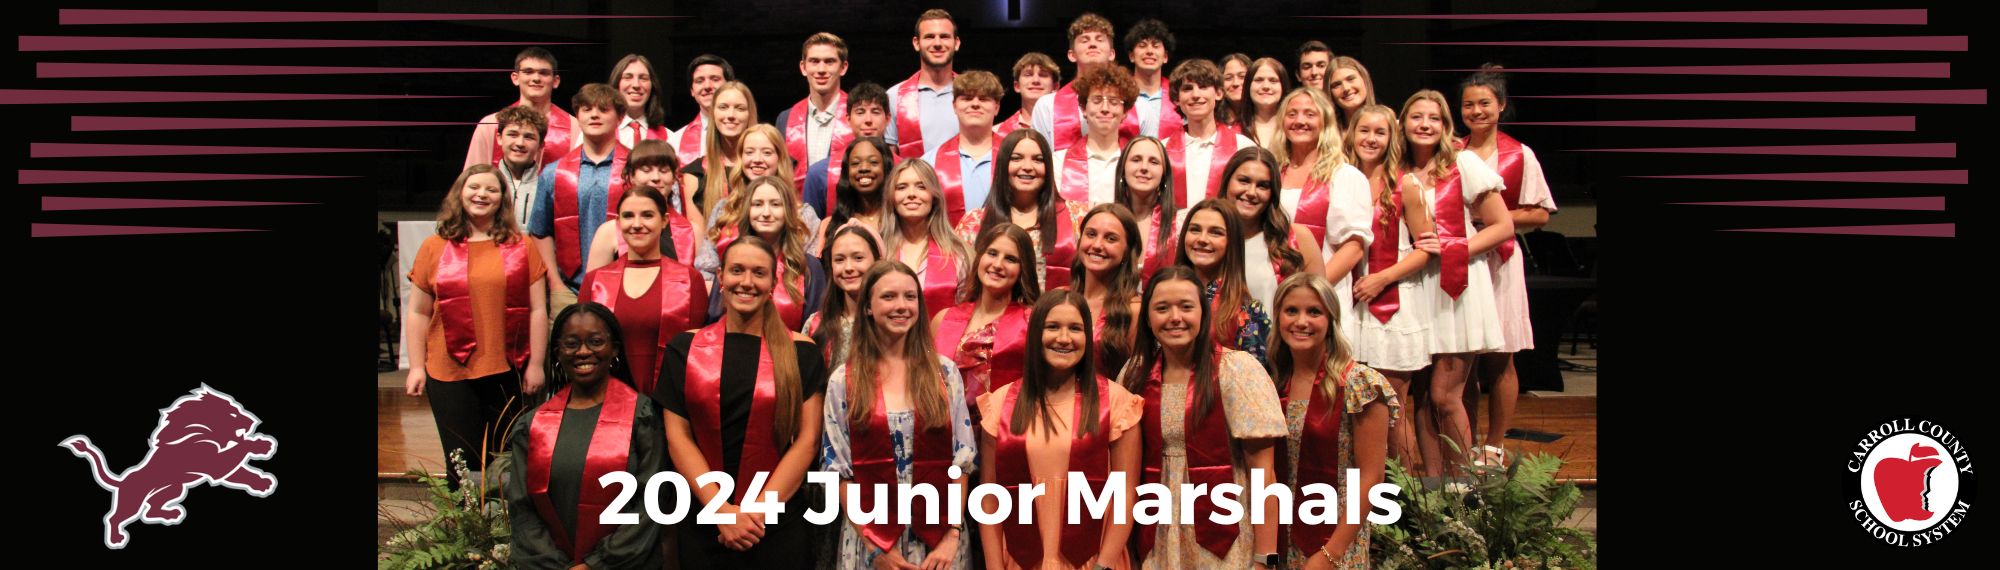 2024 Junior Marshals